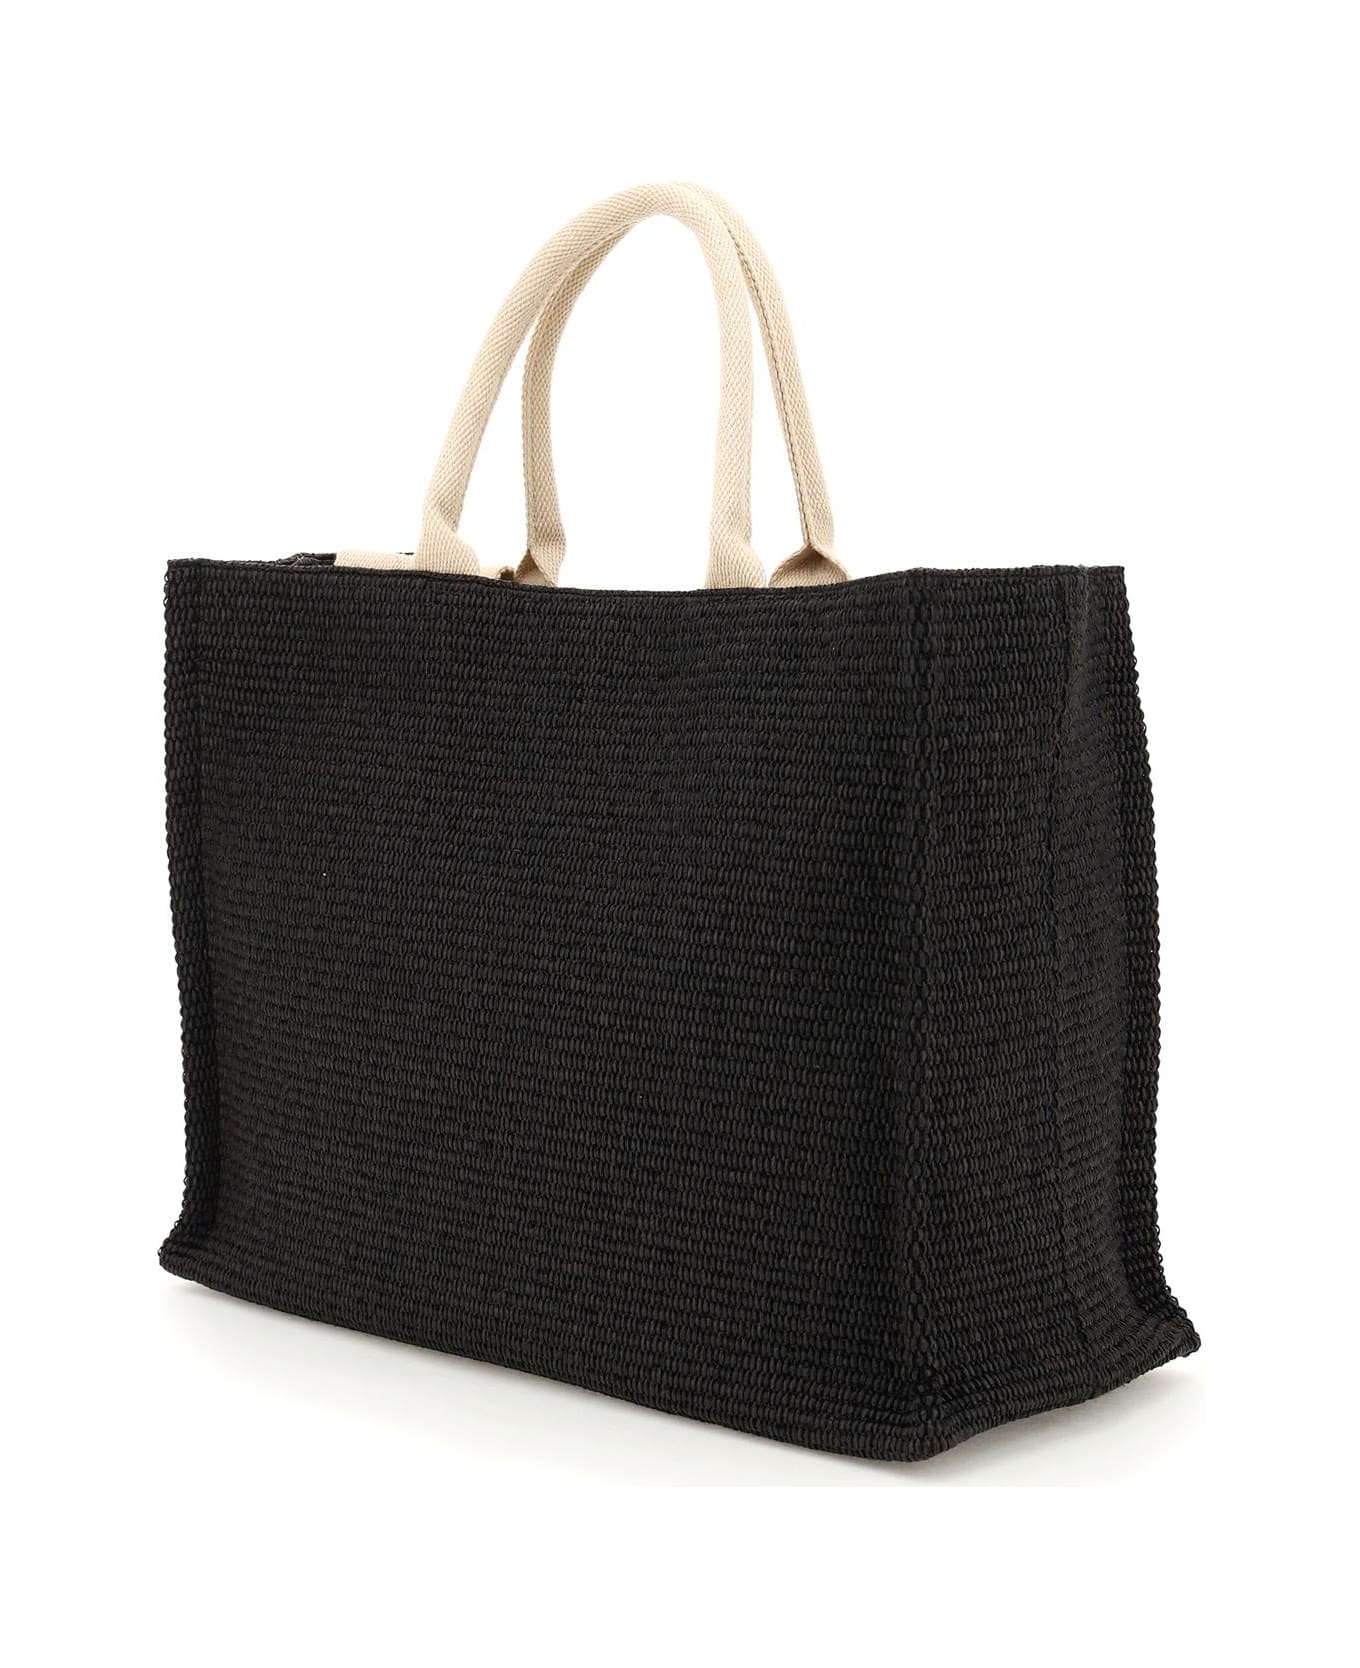 Marni 'tote' Shopping Bag - BLACK NATURAL (Black)